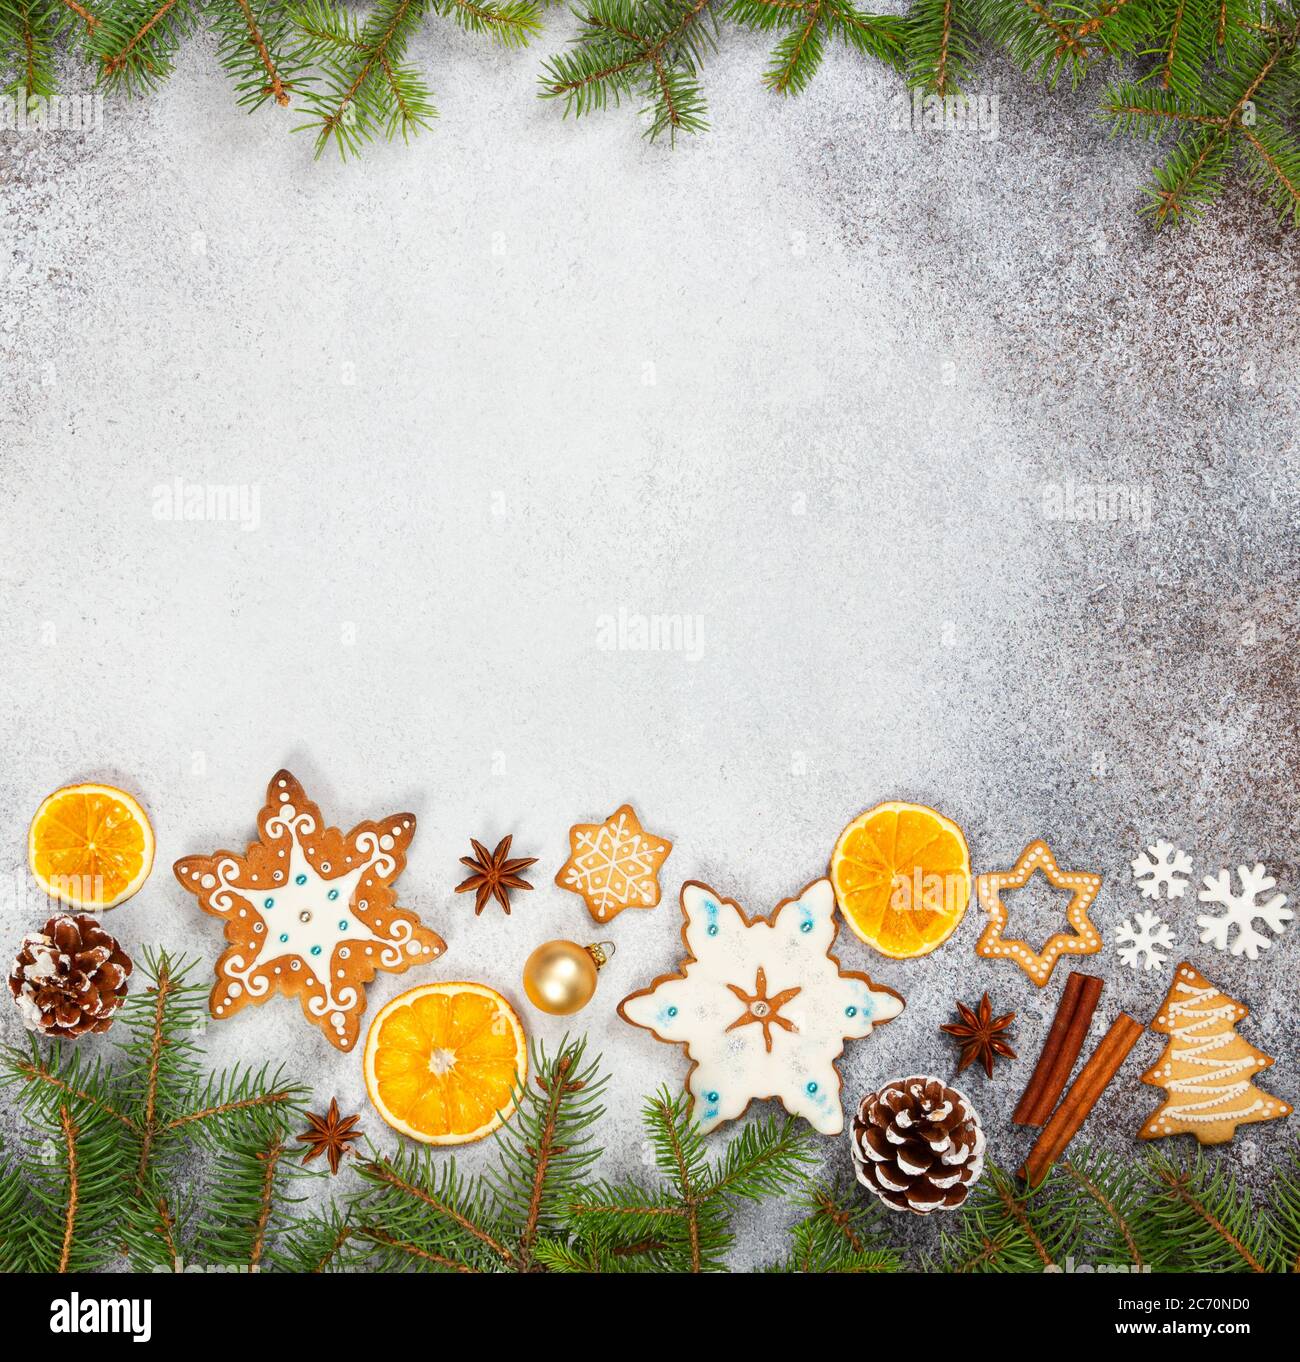 Galletas de jengibre de Navidad en forma de copos de nieve, naranja seco, anís estrellado y conos de abeto sobre fondo de piedra gris. Vista superior. Símbolos de año Nuevo y C Foto de stock